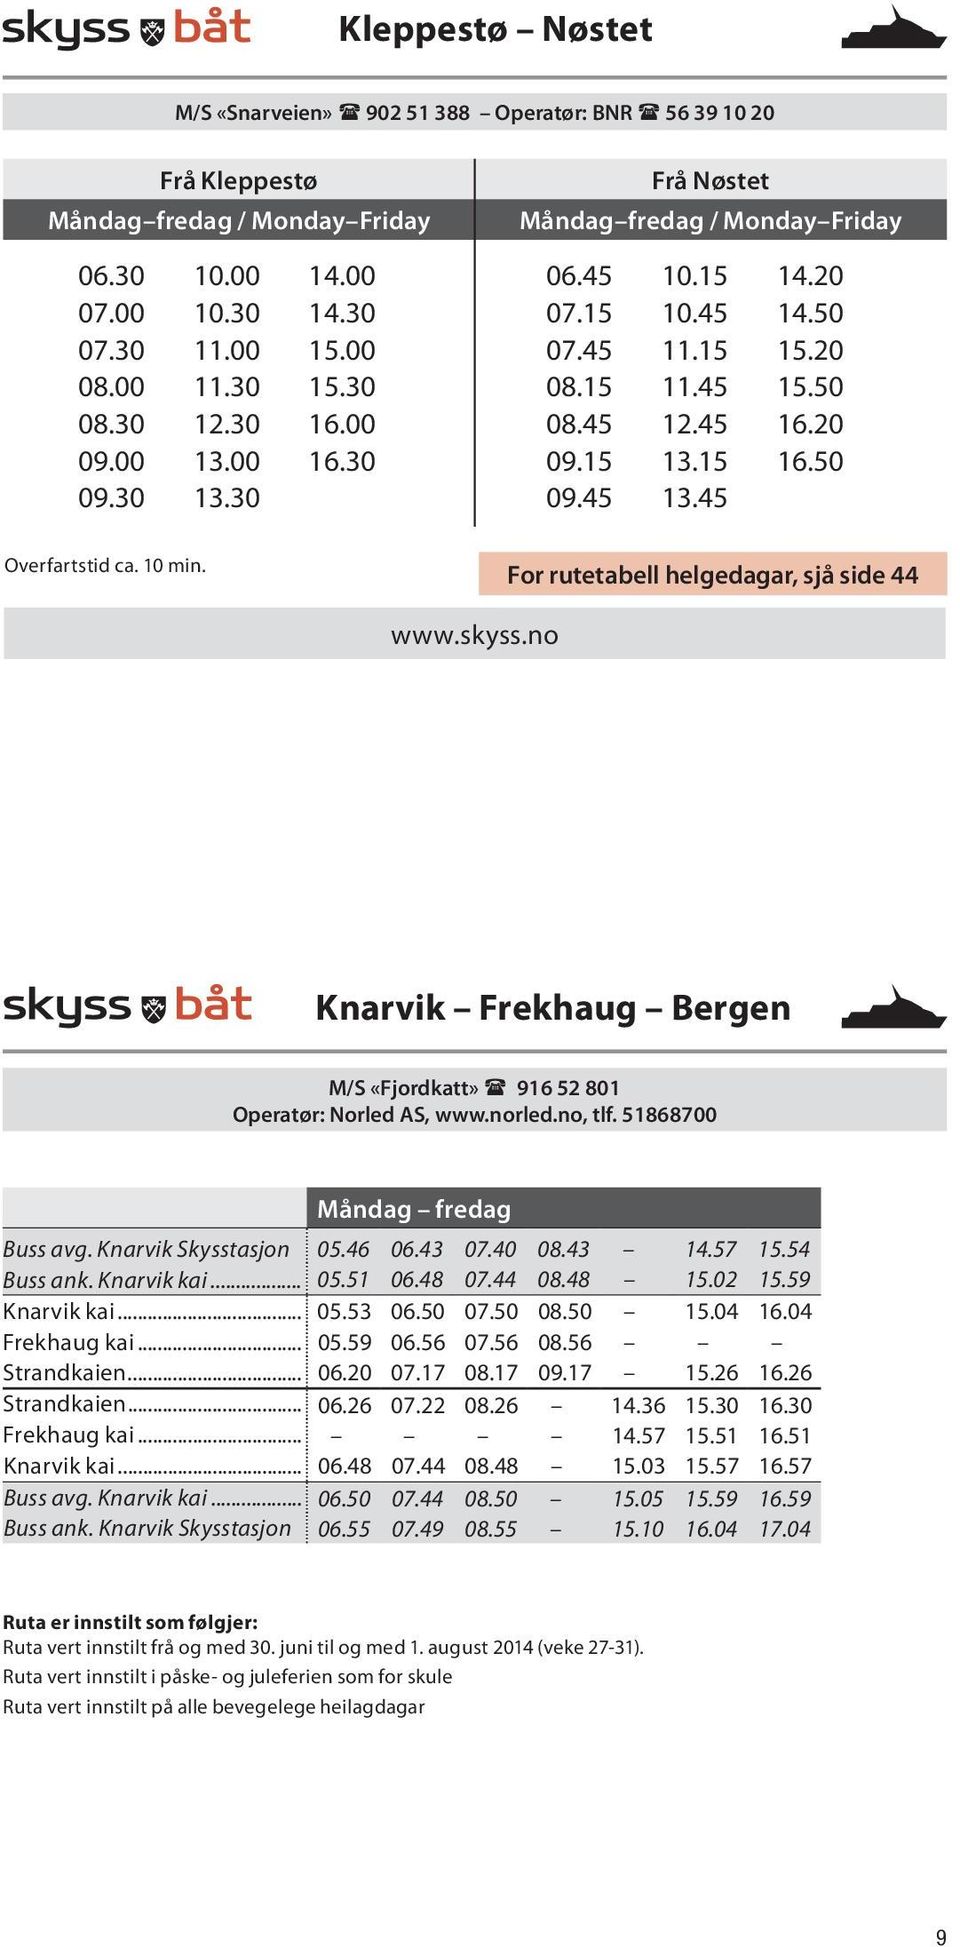 For rutetabell helgedagar, sjå side 44 www.skyss.no Knarvik Frekhaug Bergen M/S «Fjordkatt» 916 52 801 Operatør: Norled AS, www.norled.no, tlf. 51868700 Måndag fredag Buss avg. Knarvik Skysstasjon 05.